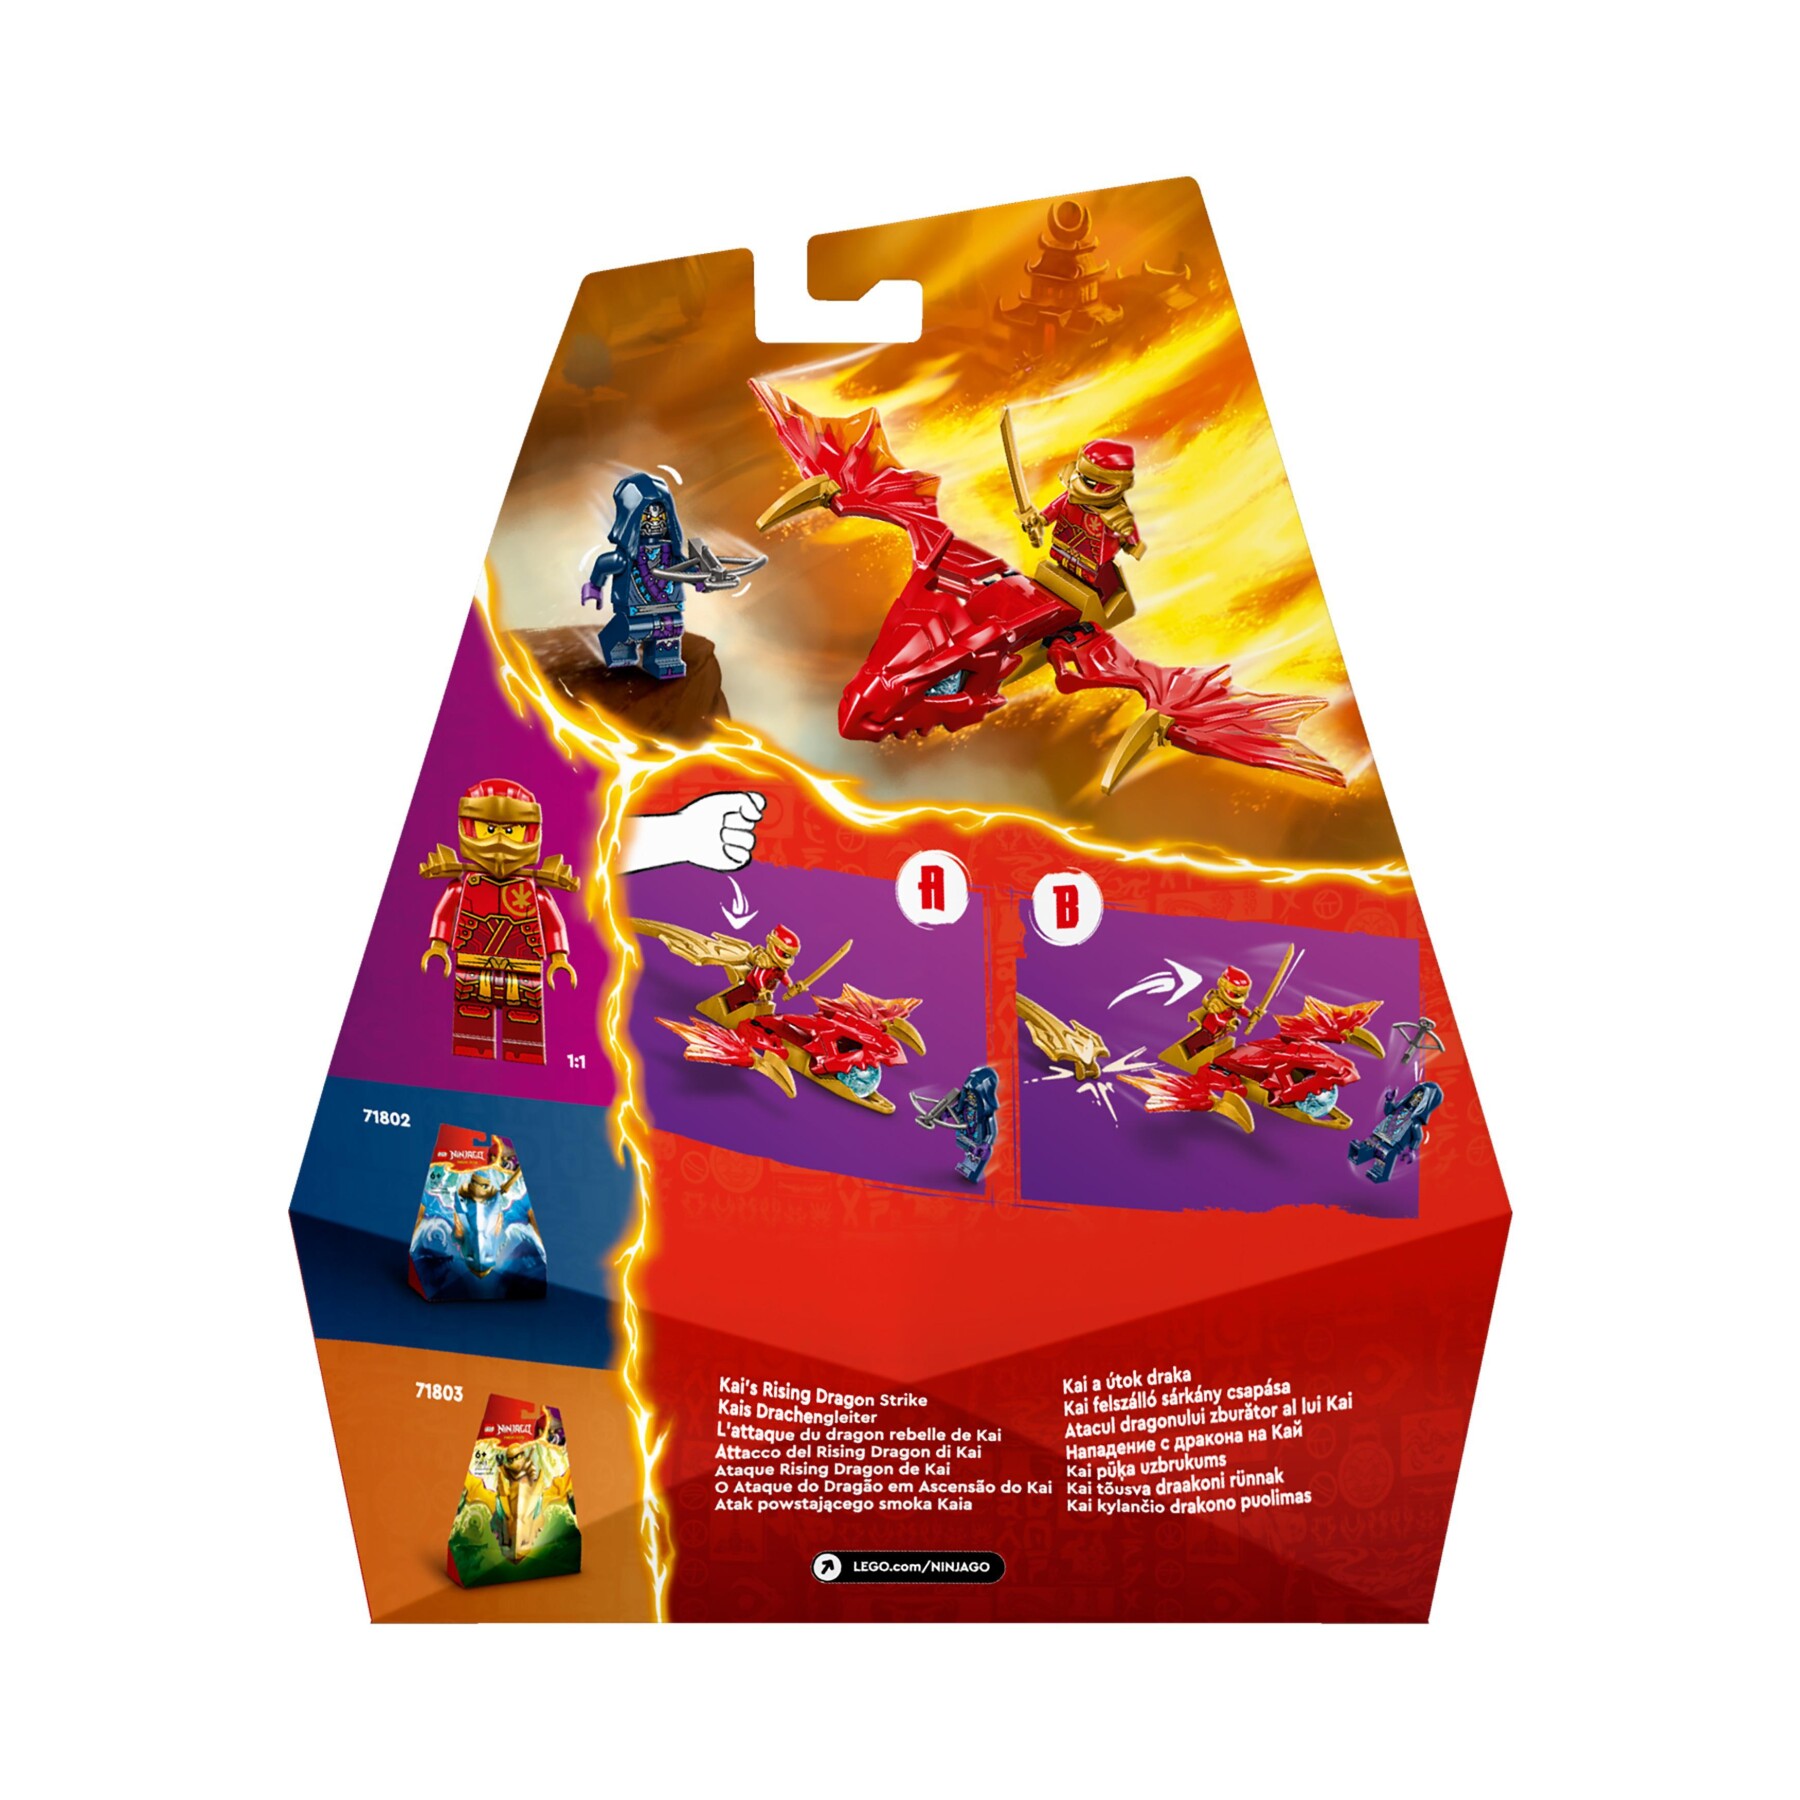 Lego ninjago 71801 attacco del rising dragon di kai, giochi per bambini 6+ con action figure di drago giocattolo e minifigure - LEGO NINJAGO